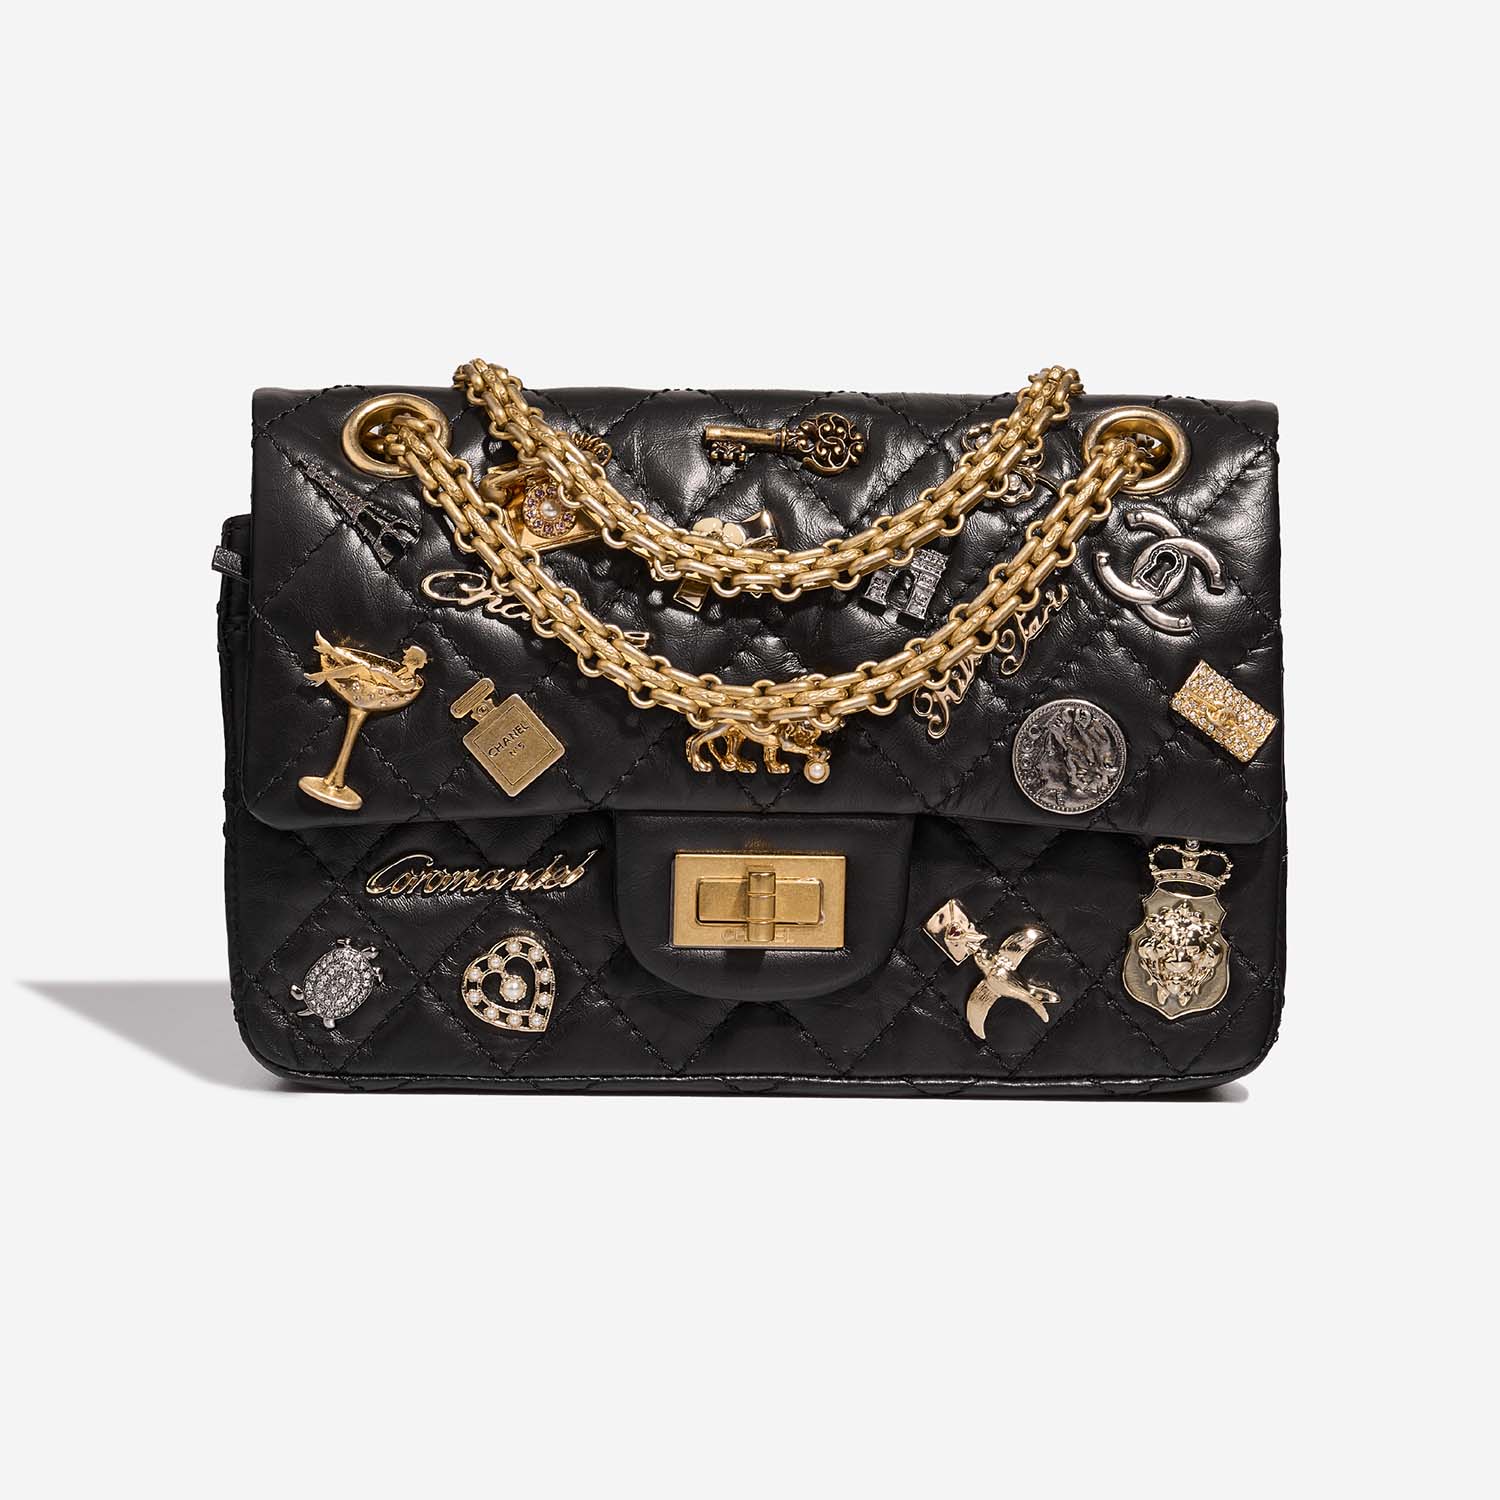 Chanel 255 225 Black Front S | Verkaufen Sie Ihre Designer-Tasche auf Saclab.com